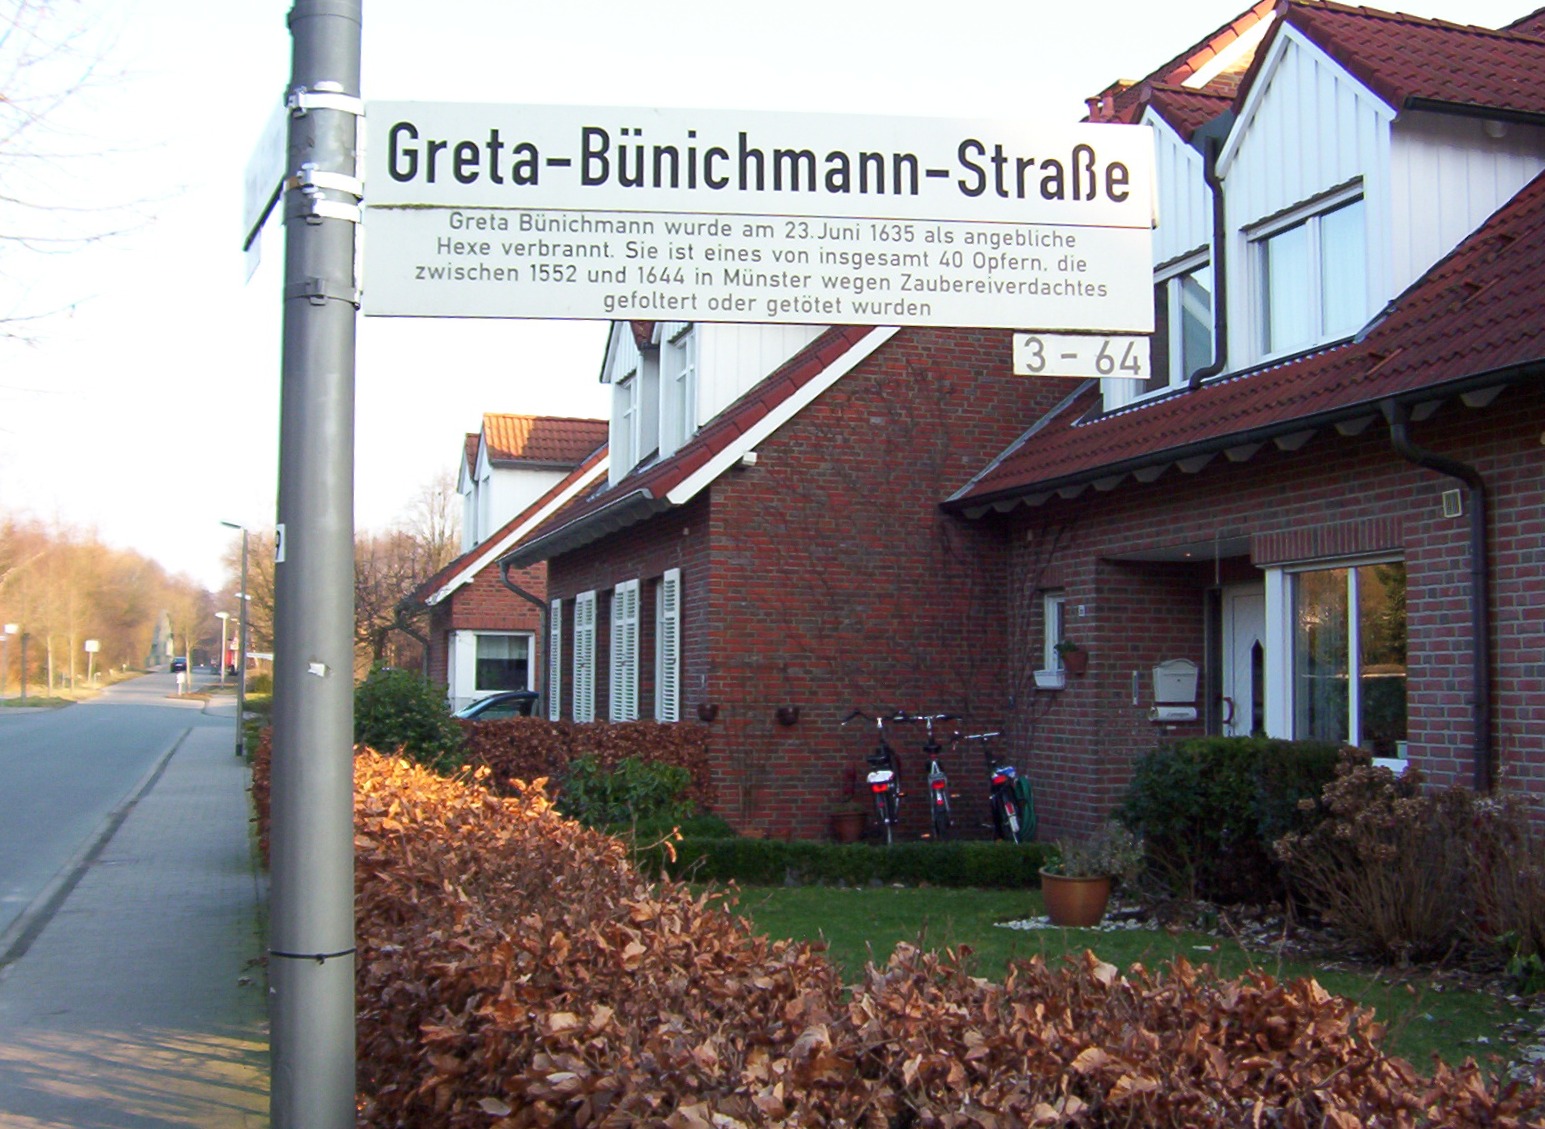 Straßenschild der Greta-Bünichmann-Straße mit Erläuterungstafel